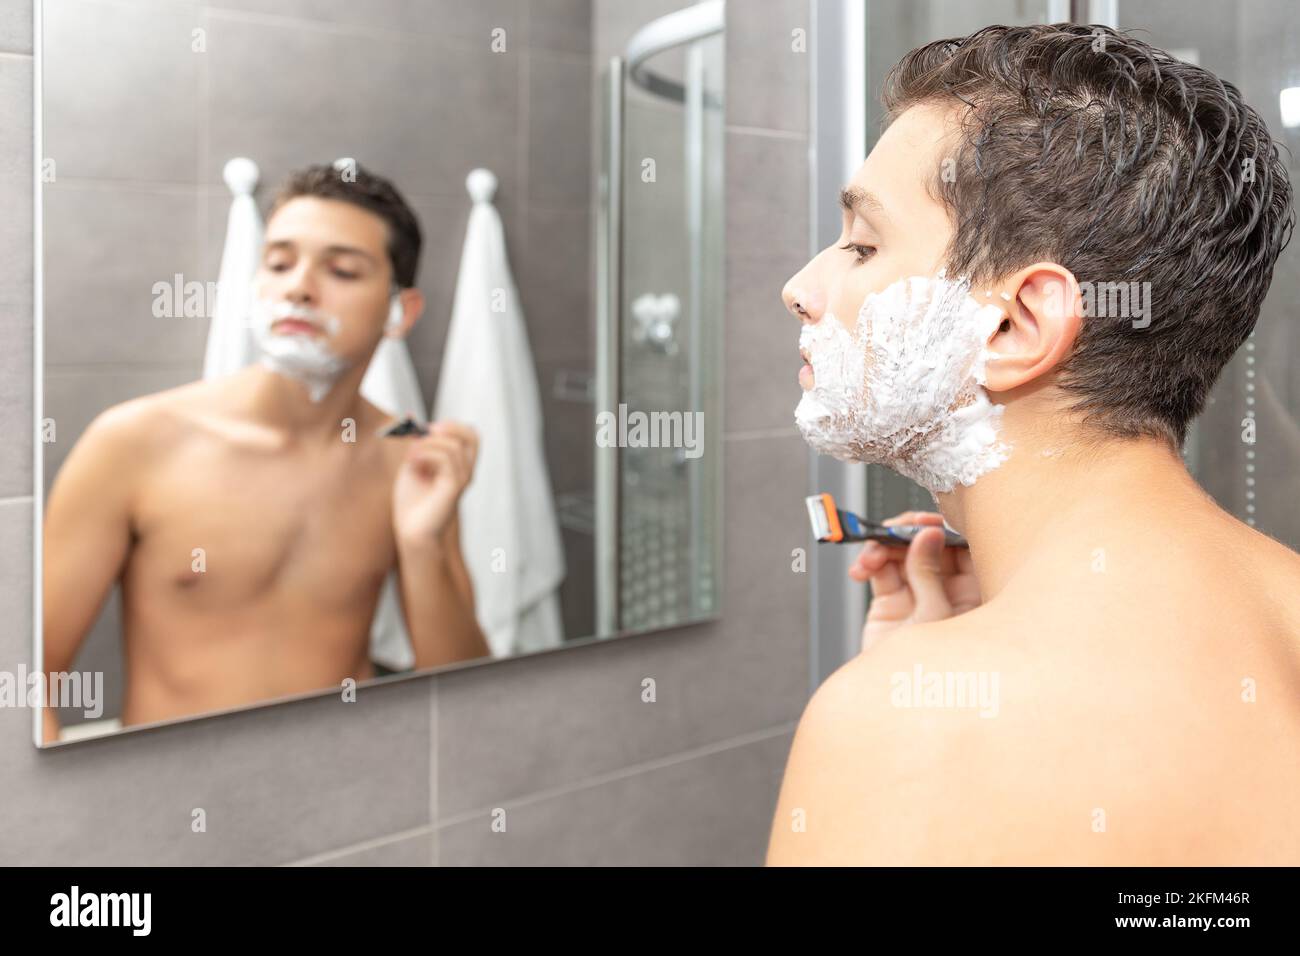 Der junge Mann Rasierprozess im Badezimmer. Der Teenager rasiert den Bart ab. Stockfoto